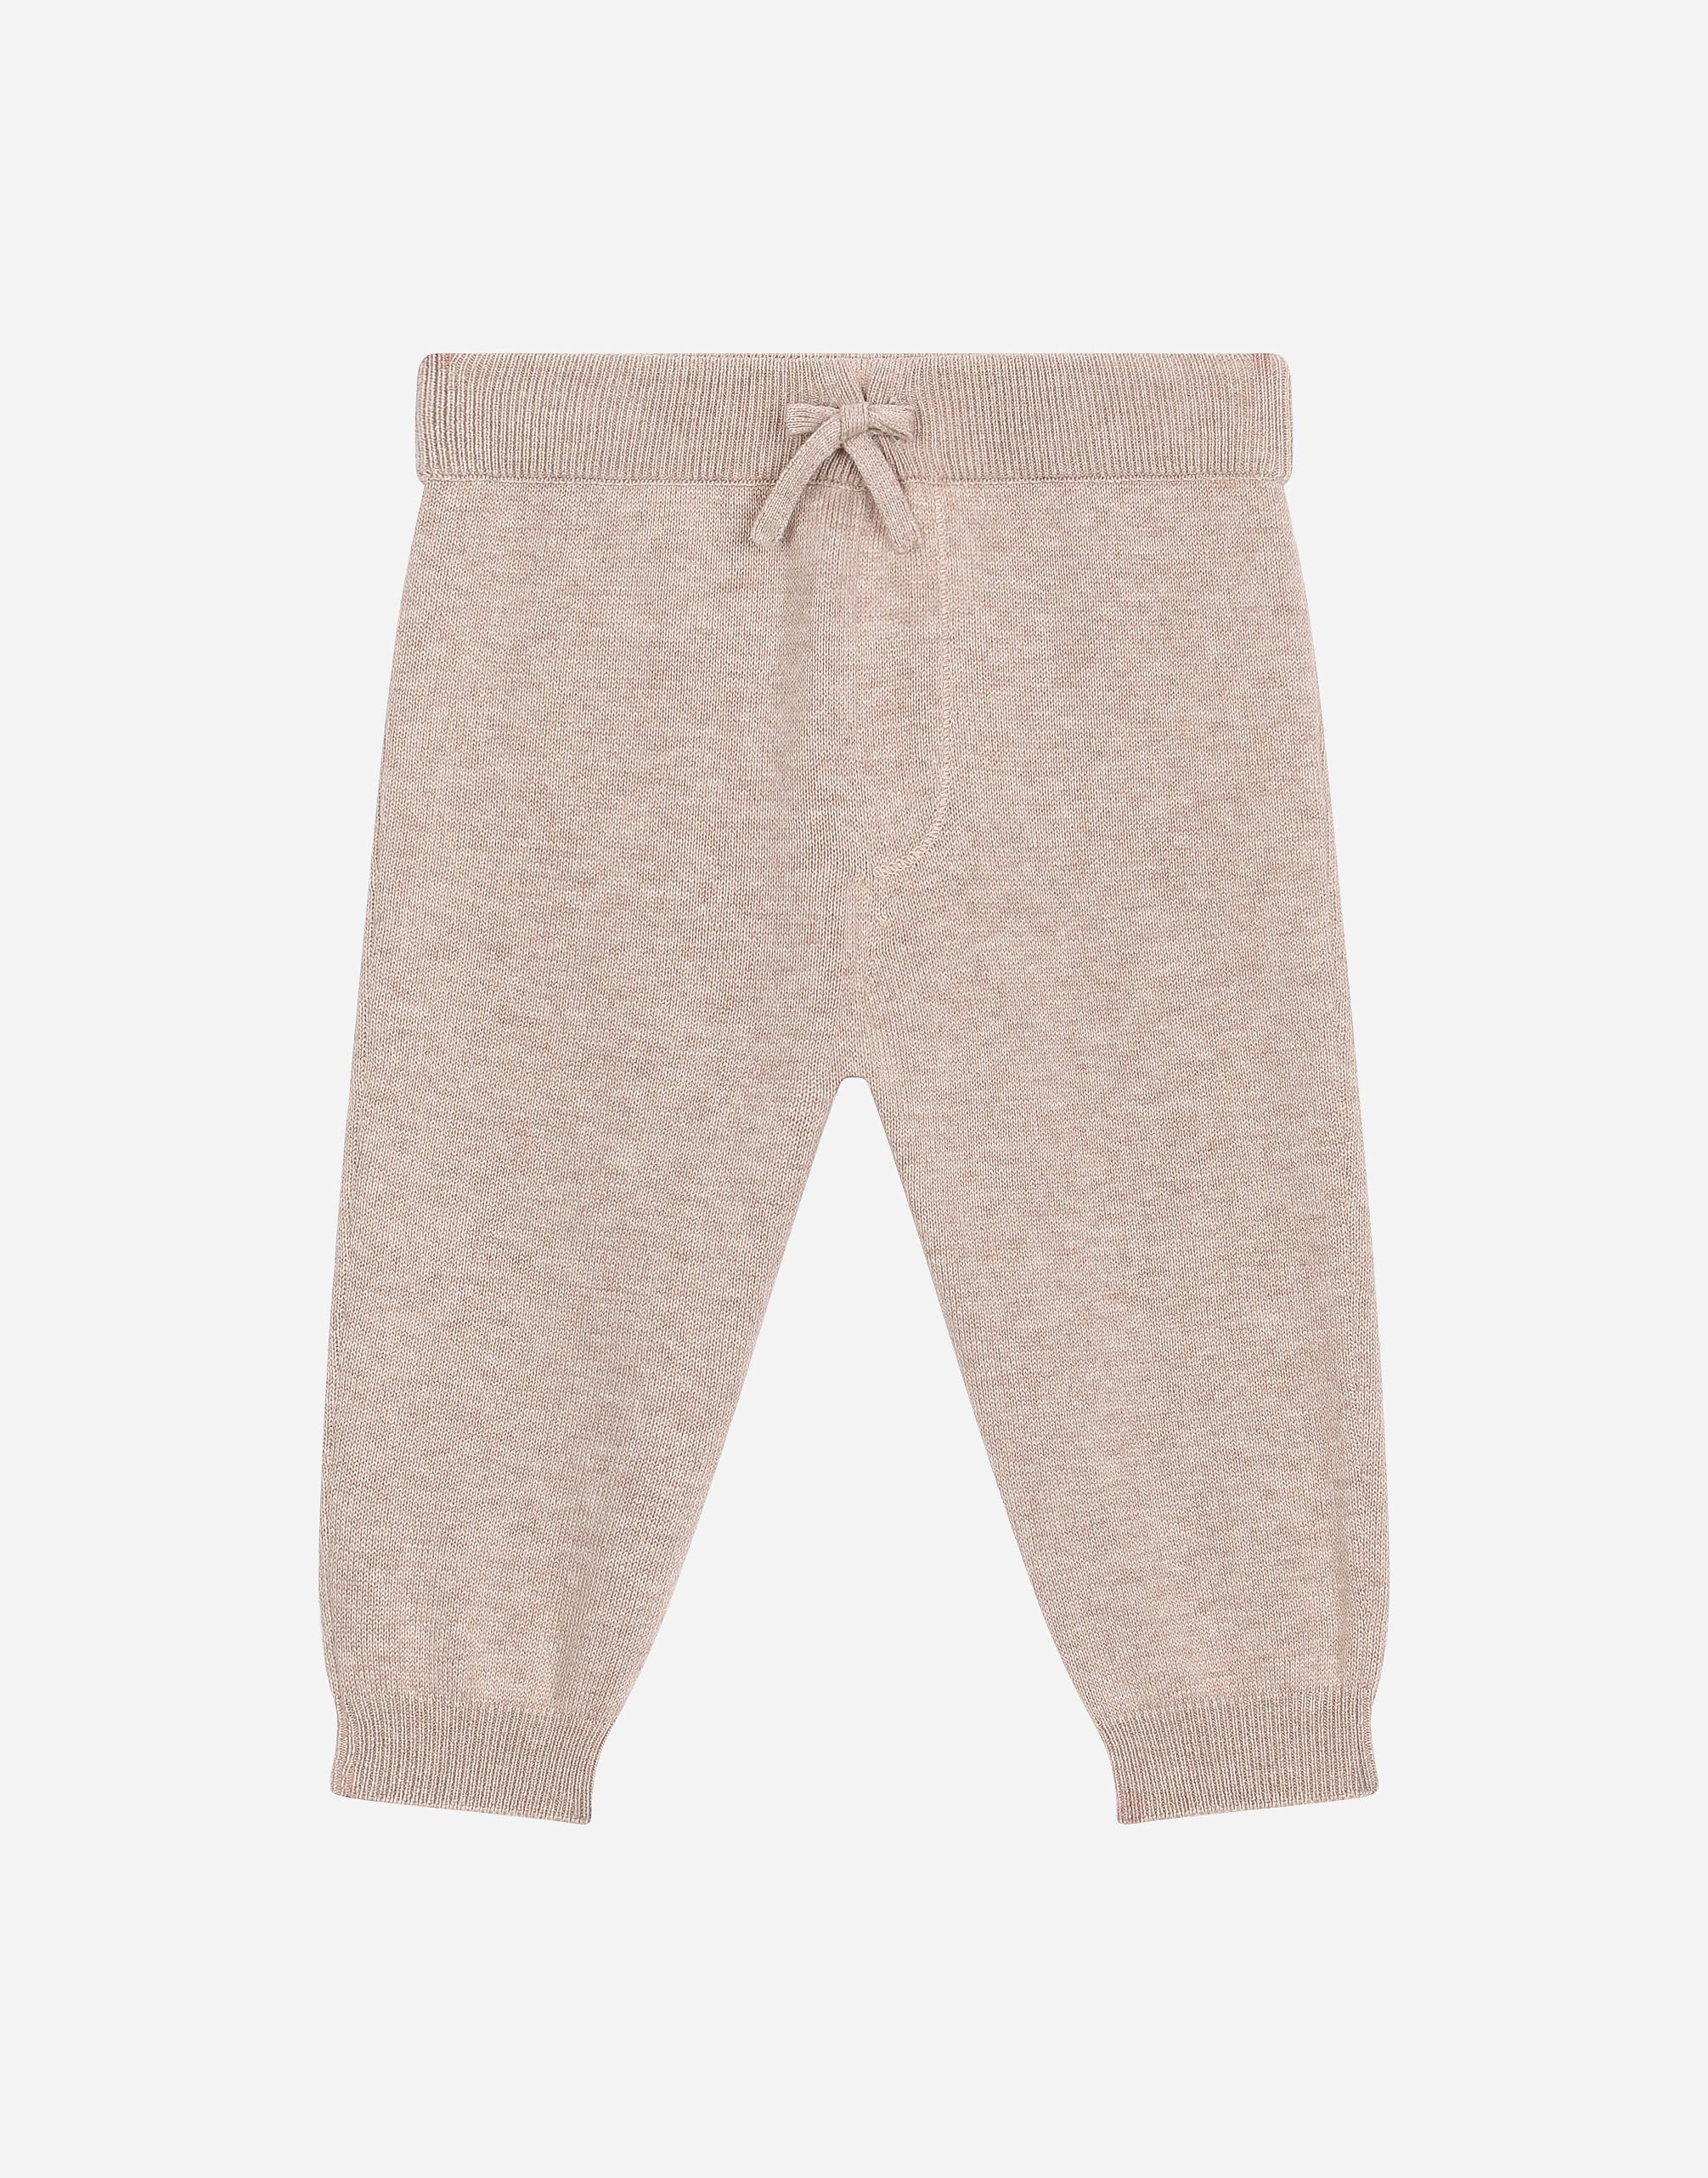 Dolce & Gabbana Plain-knit cotton jogging pants Beige L13Q08FUFJR